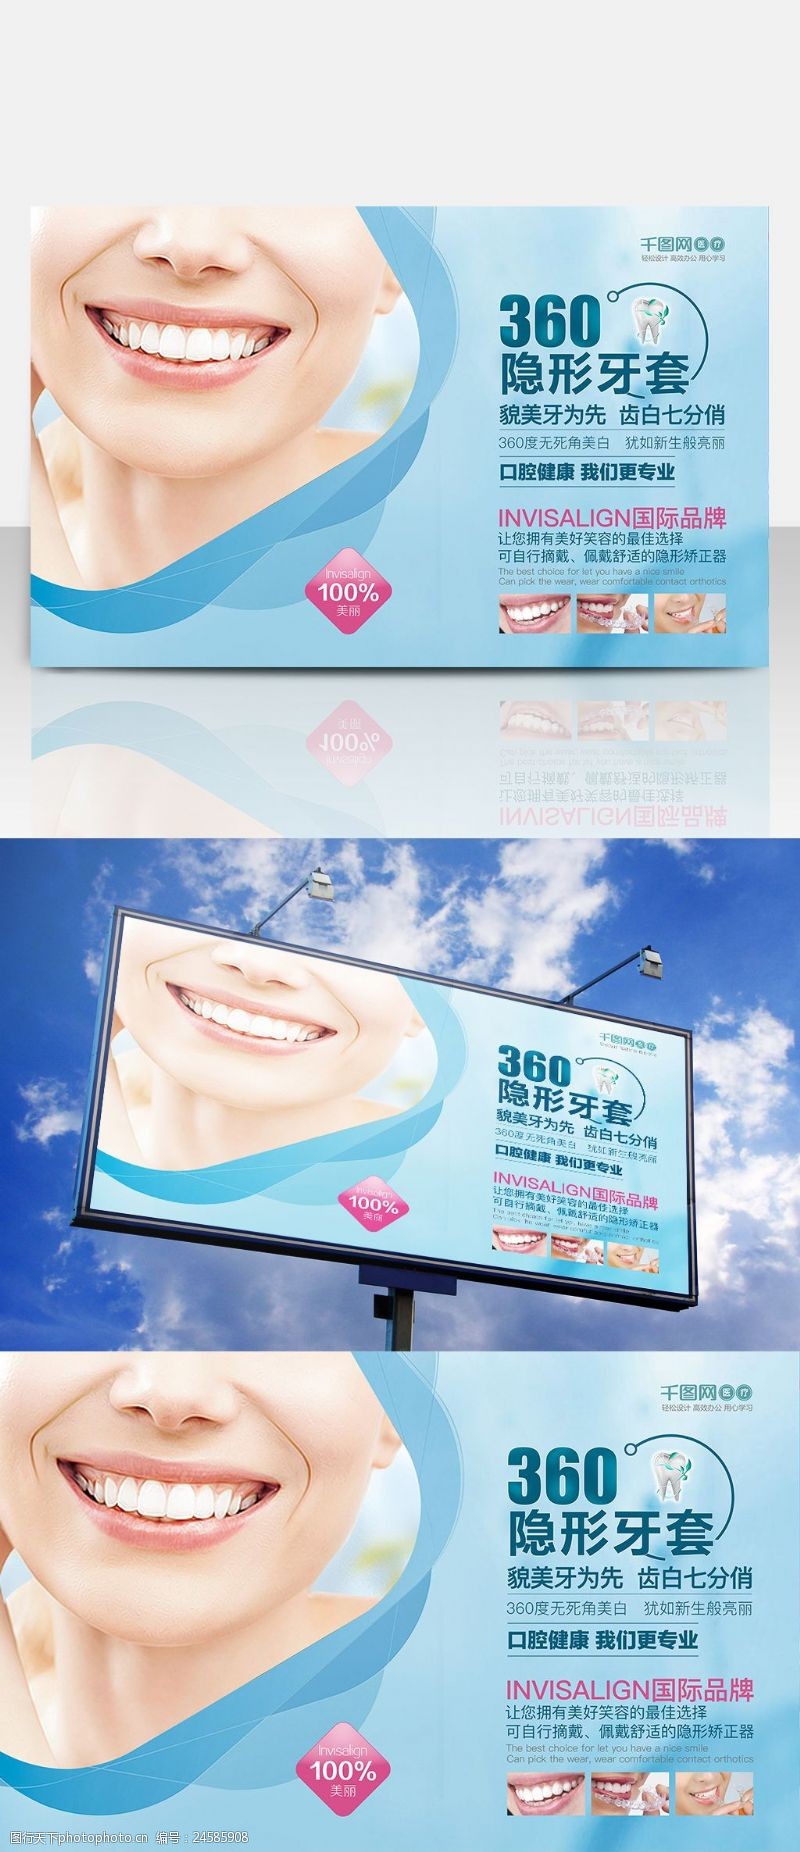 洗牙简约蓝口腔健康牙科医疗展板设计